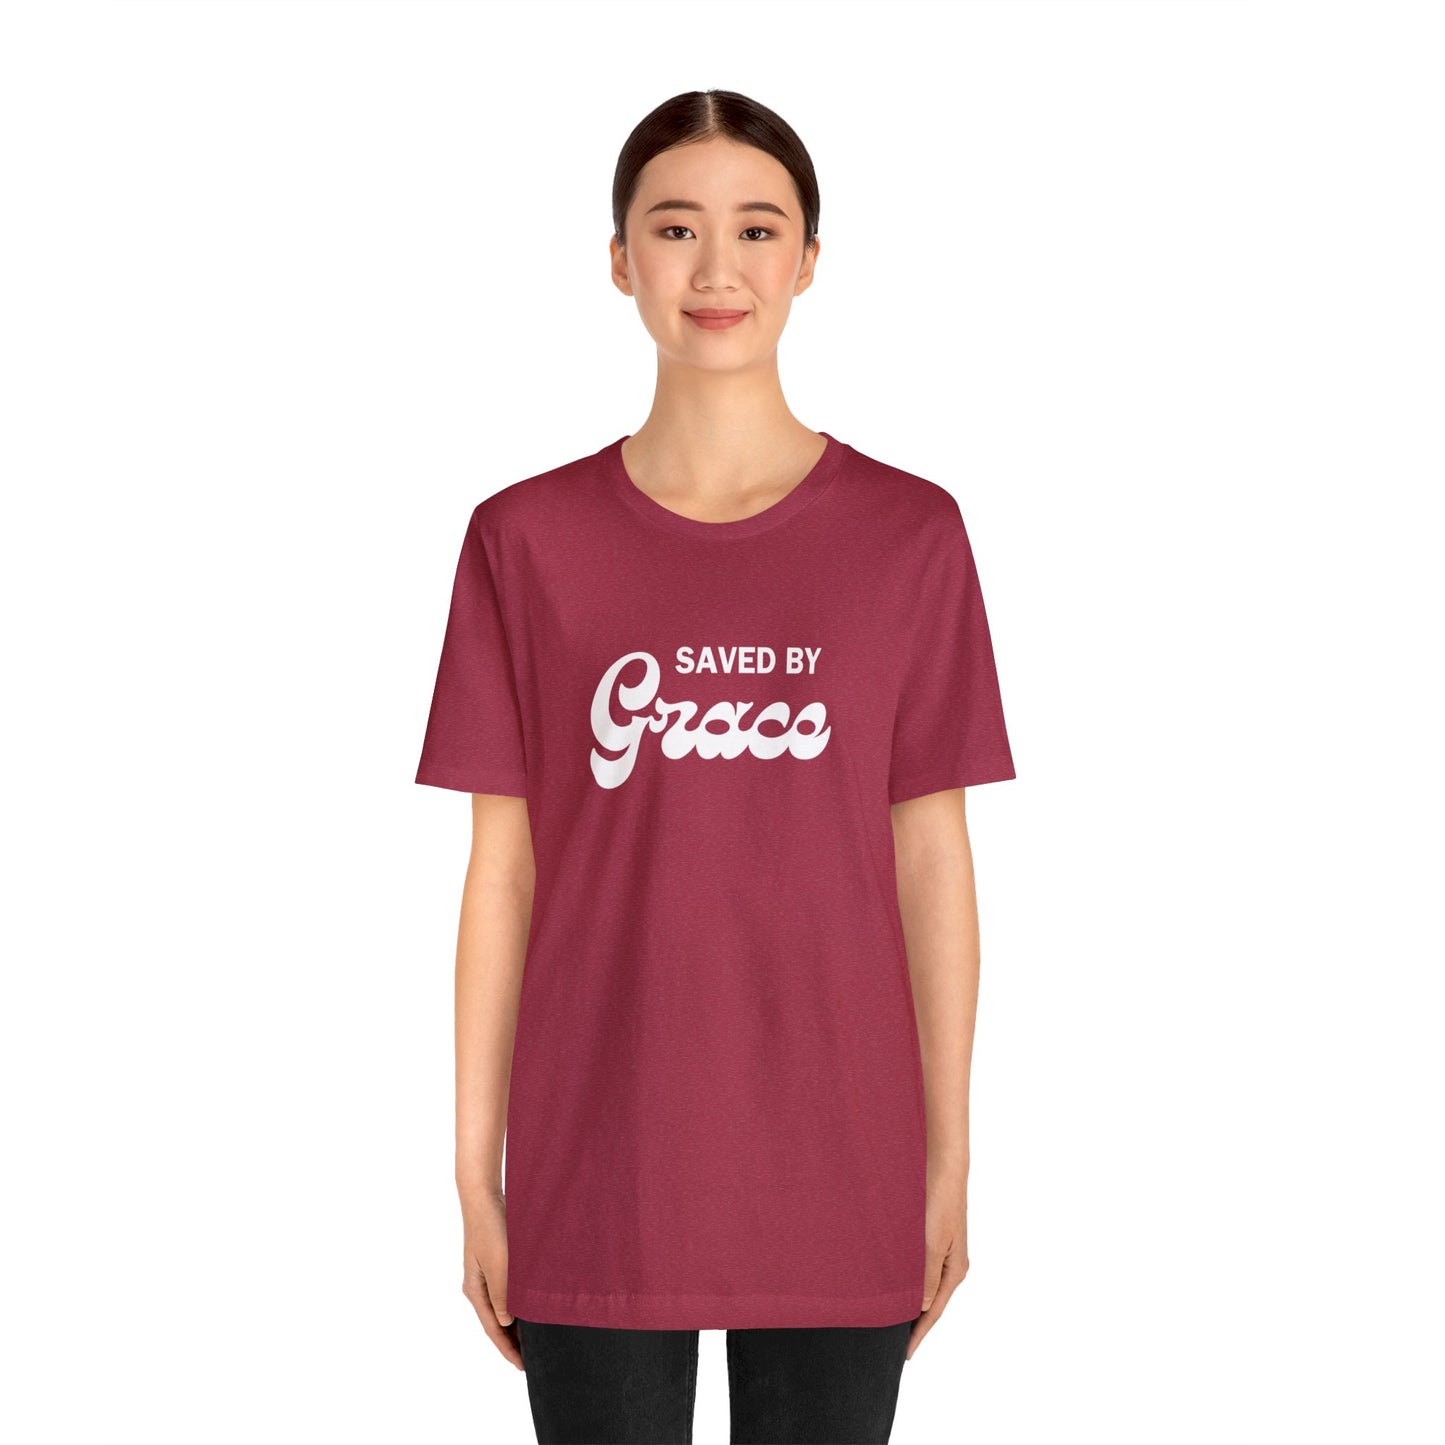 "Saved by Grace" Faith T-Shirt